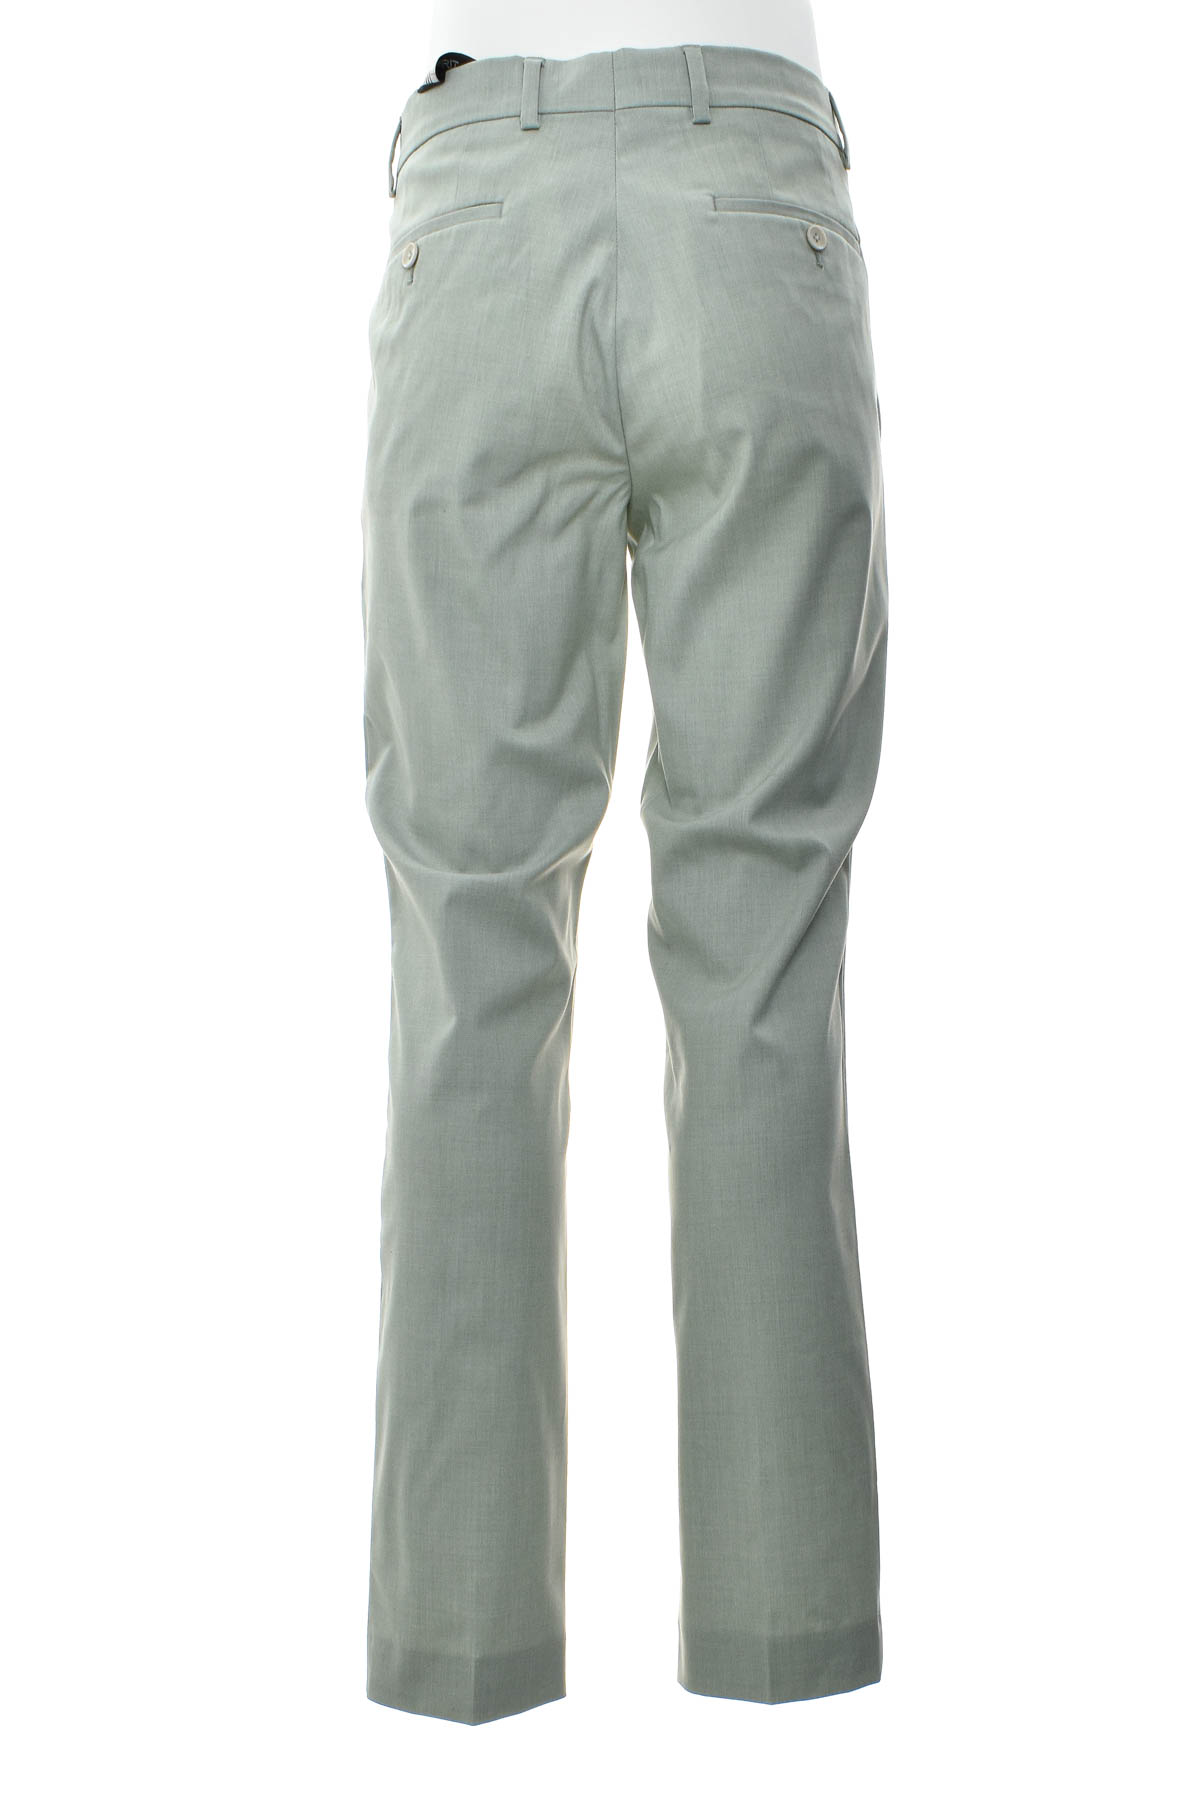 Pantalon pentru bărbați - ESPRIT - 1